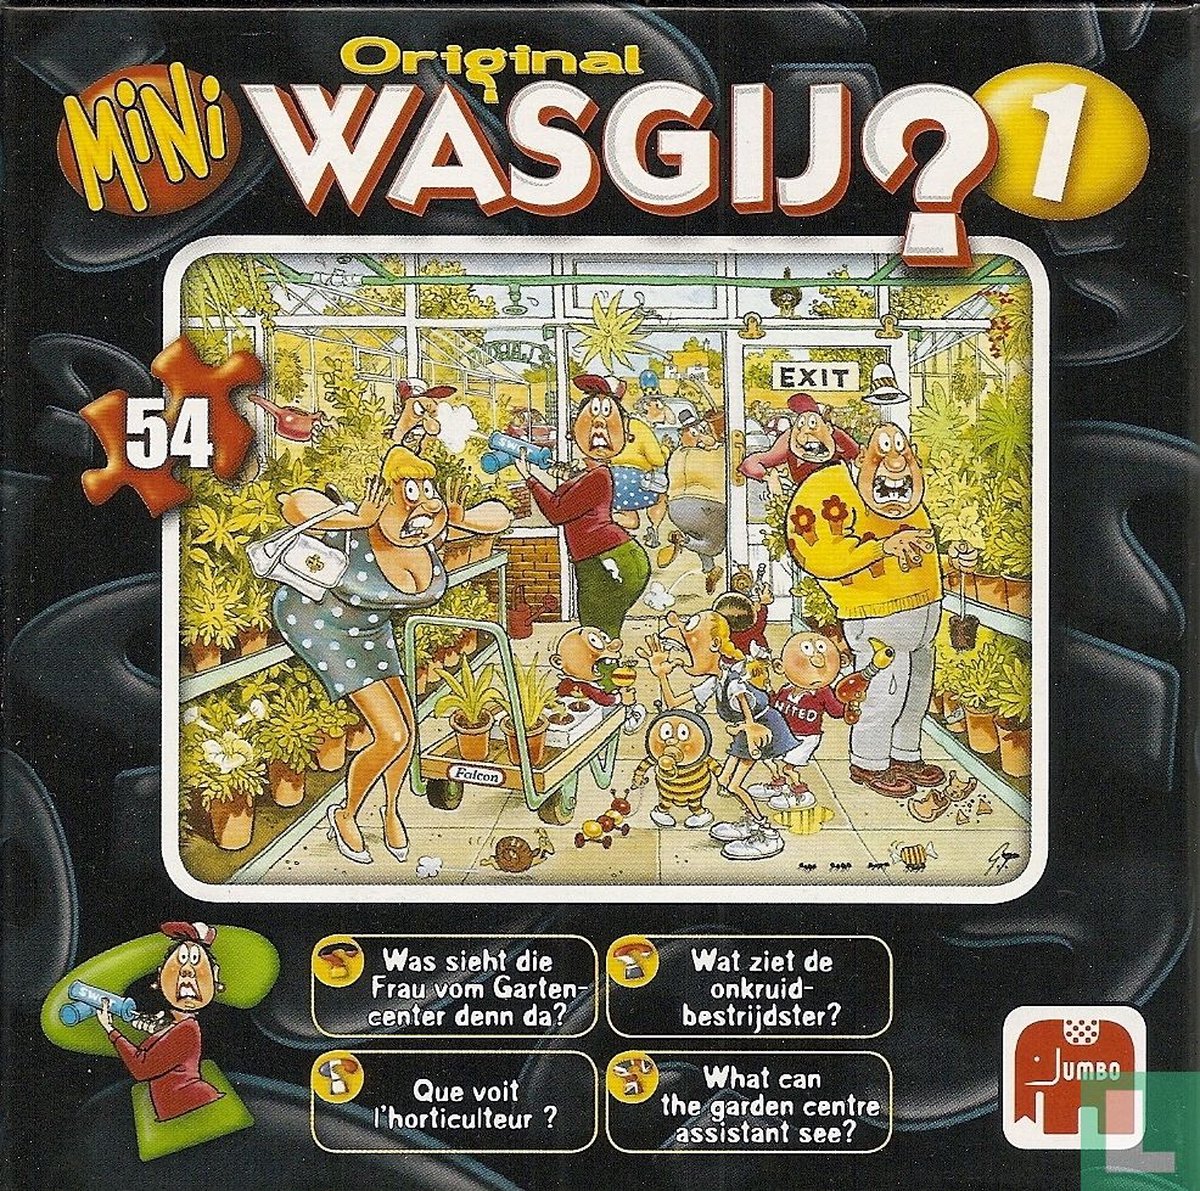 Jumbo Wasgij Original Puzzle Onkruid bestrijden!